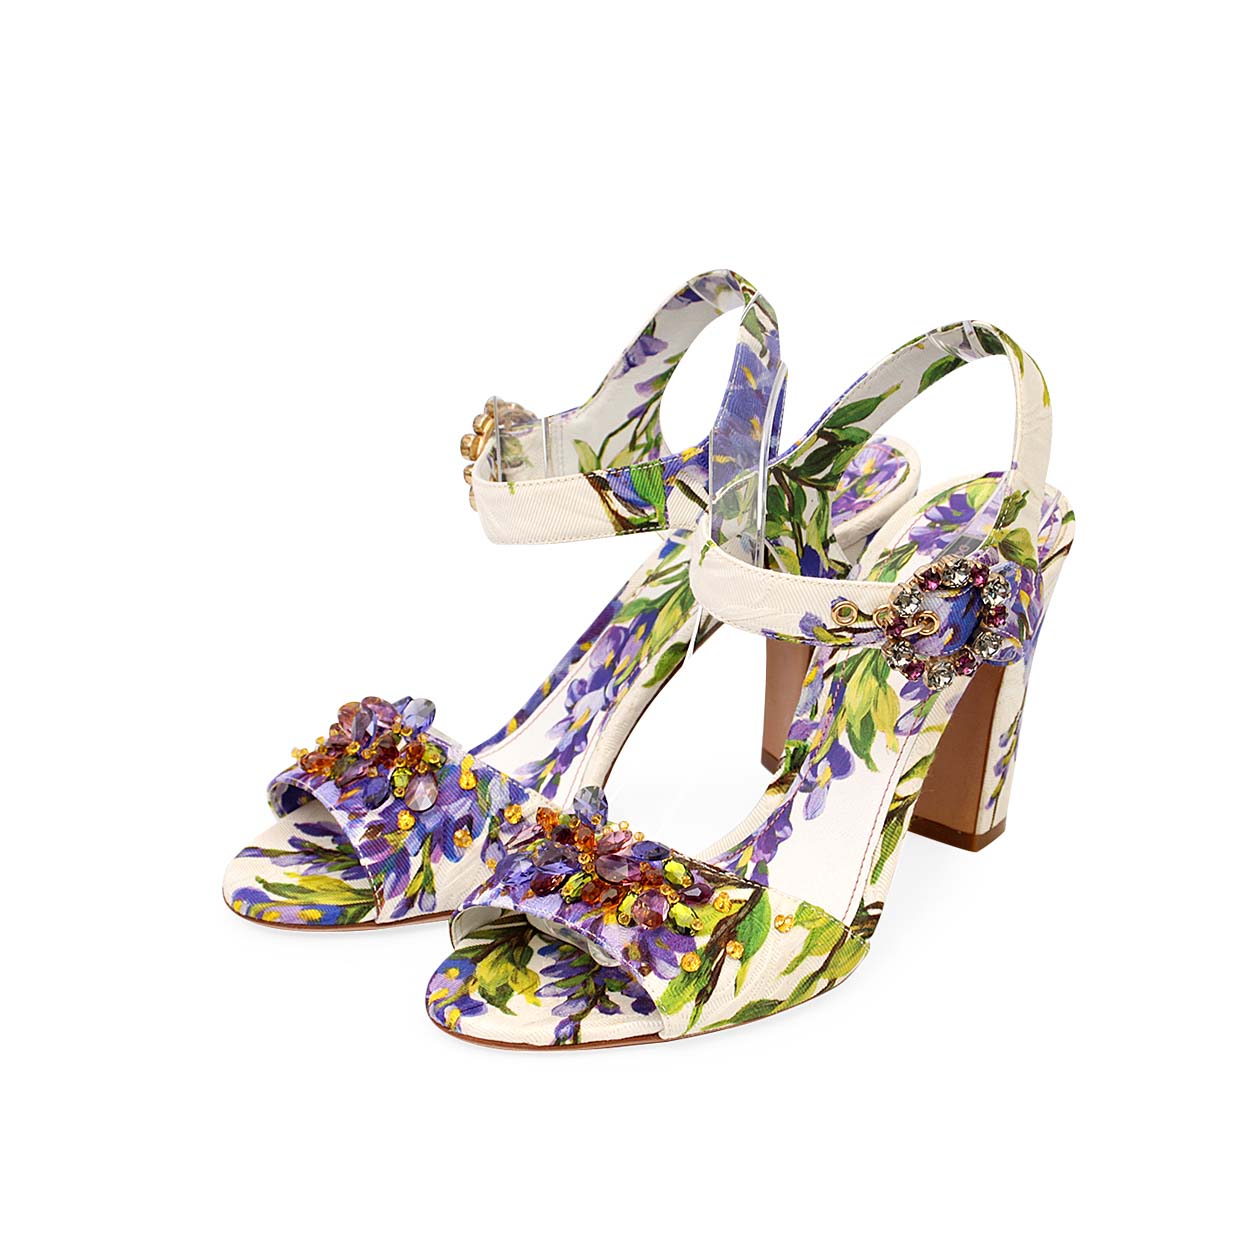 Dolce & Gabbana Sandals - Lampoo